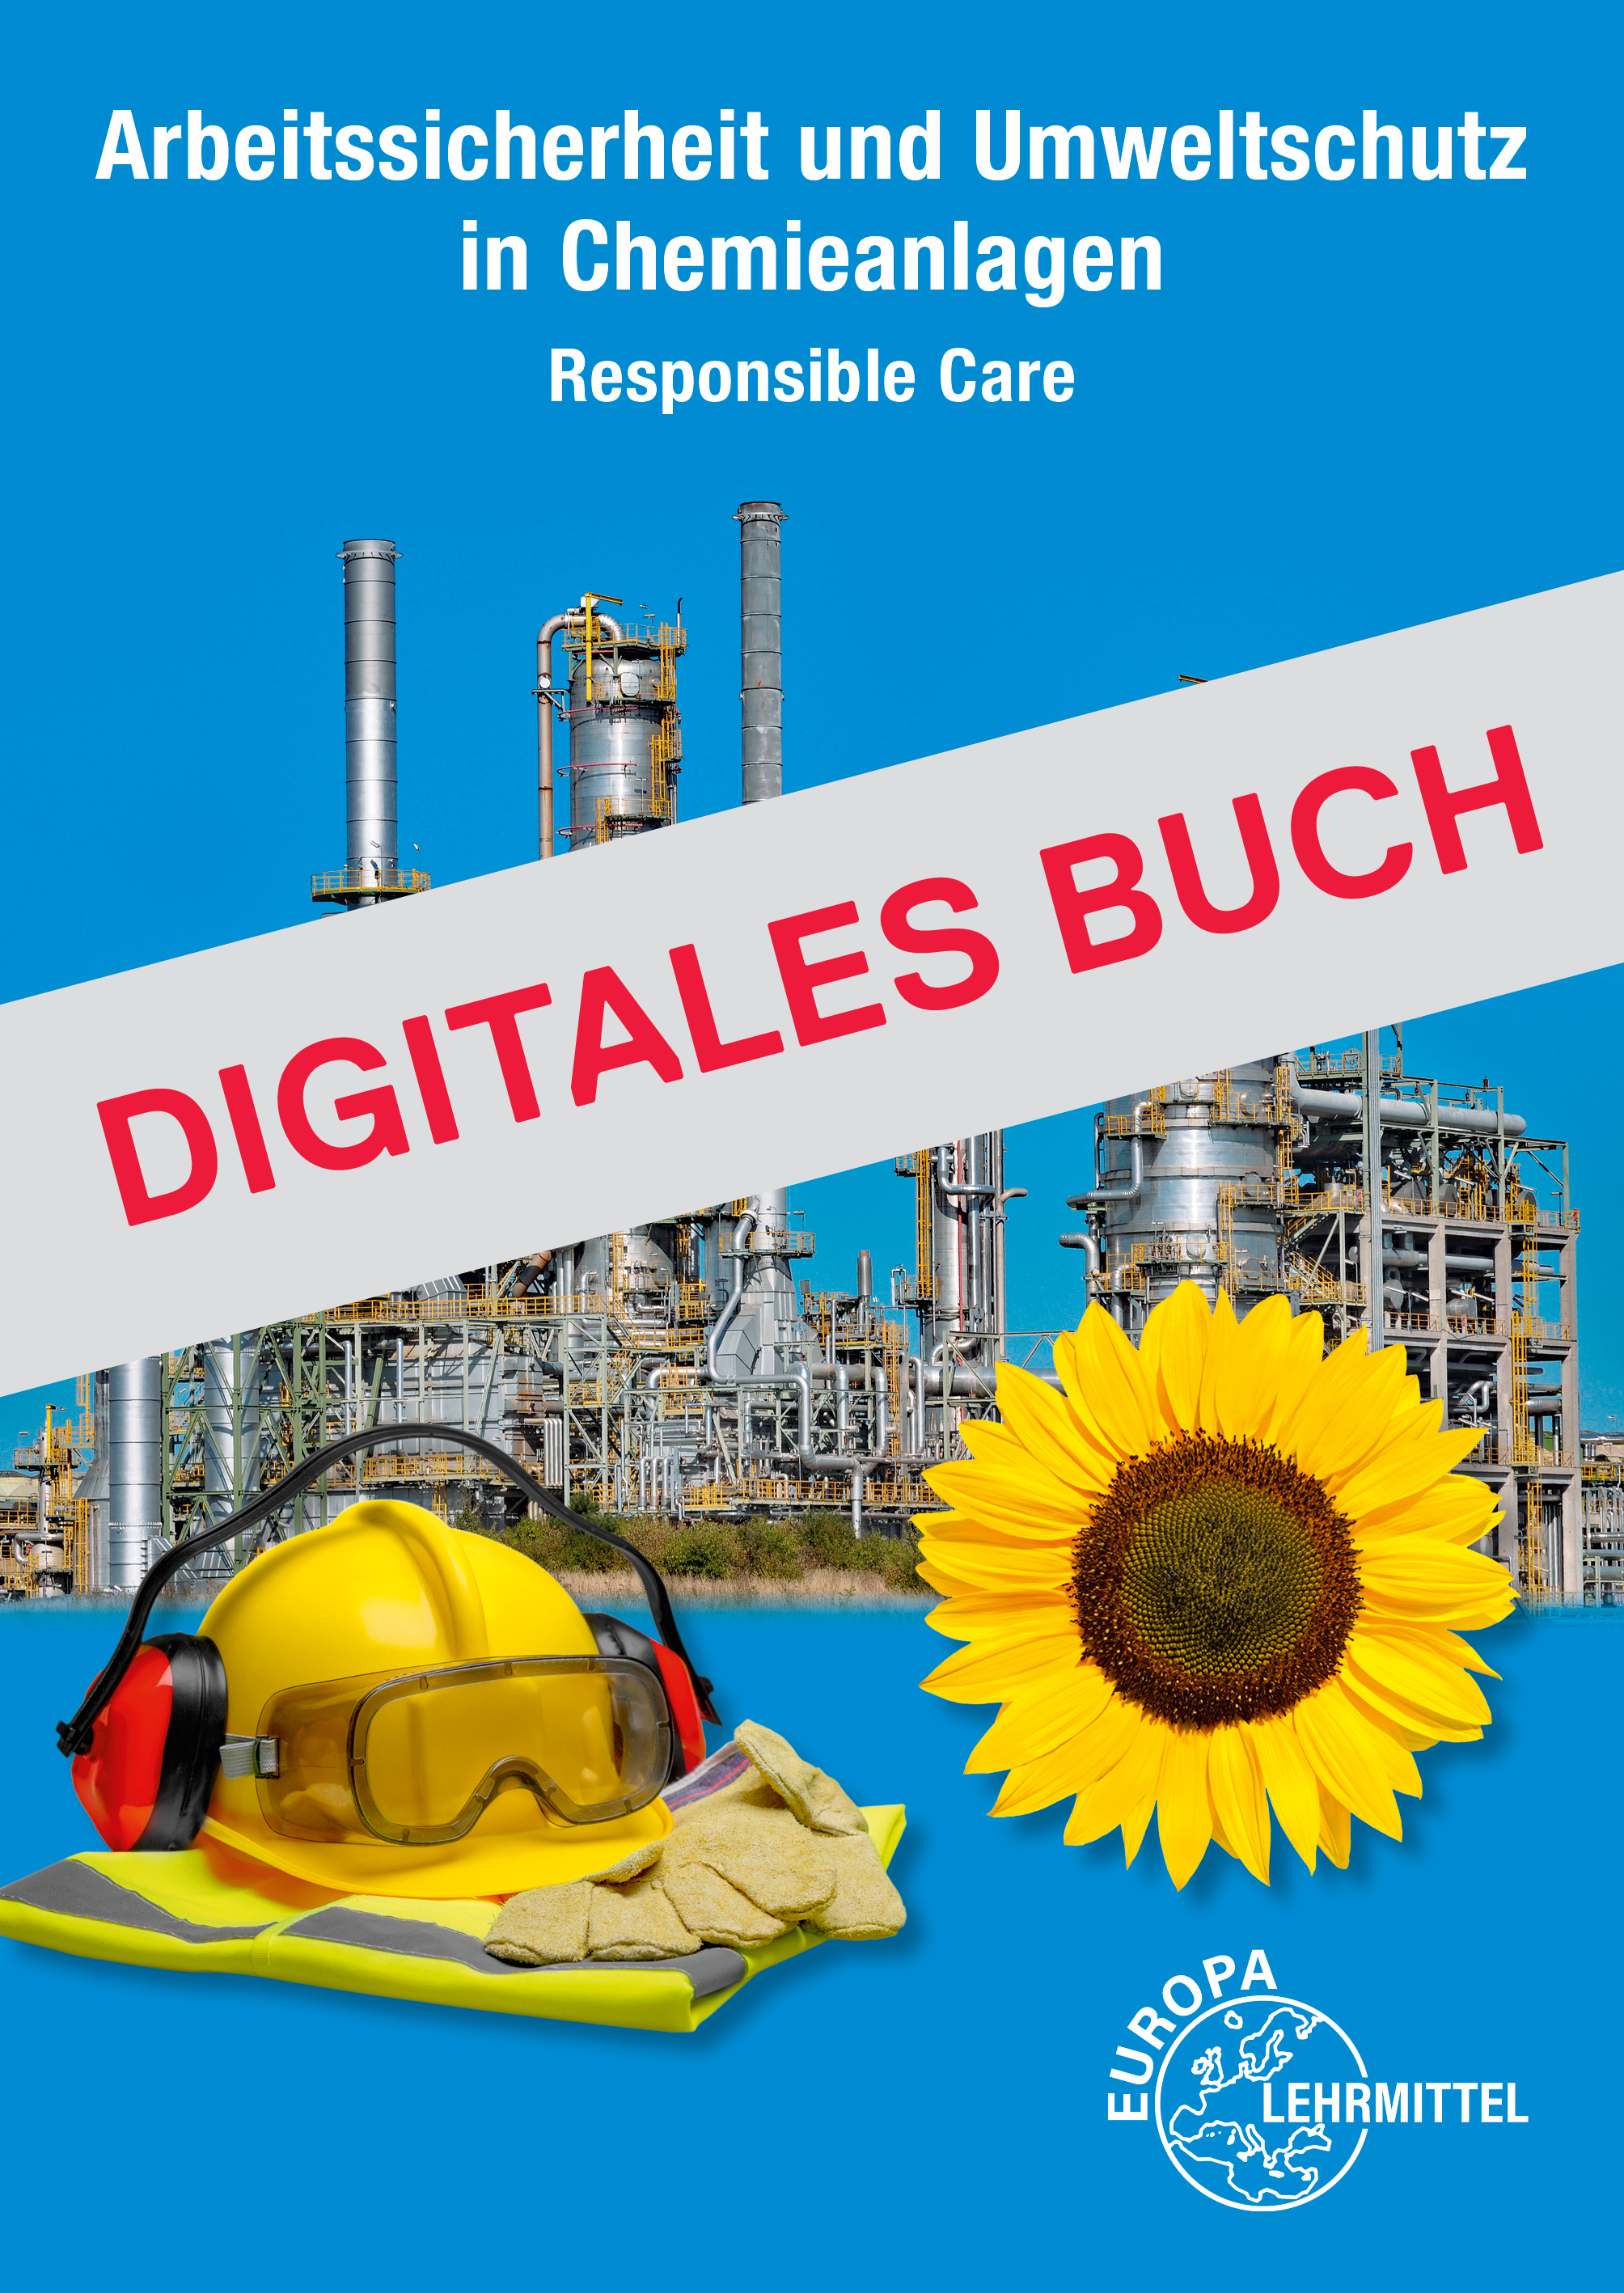 Responsible Care - Arbeitssicherheit und Umweltschutz - Digitales Buch